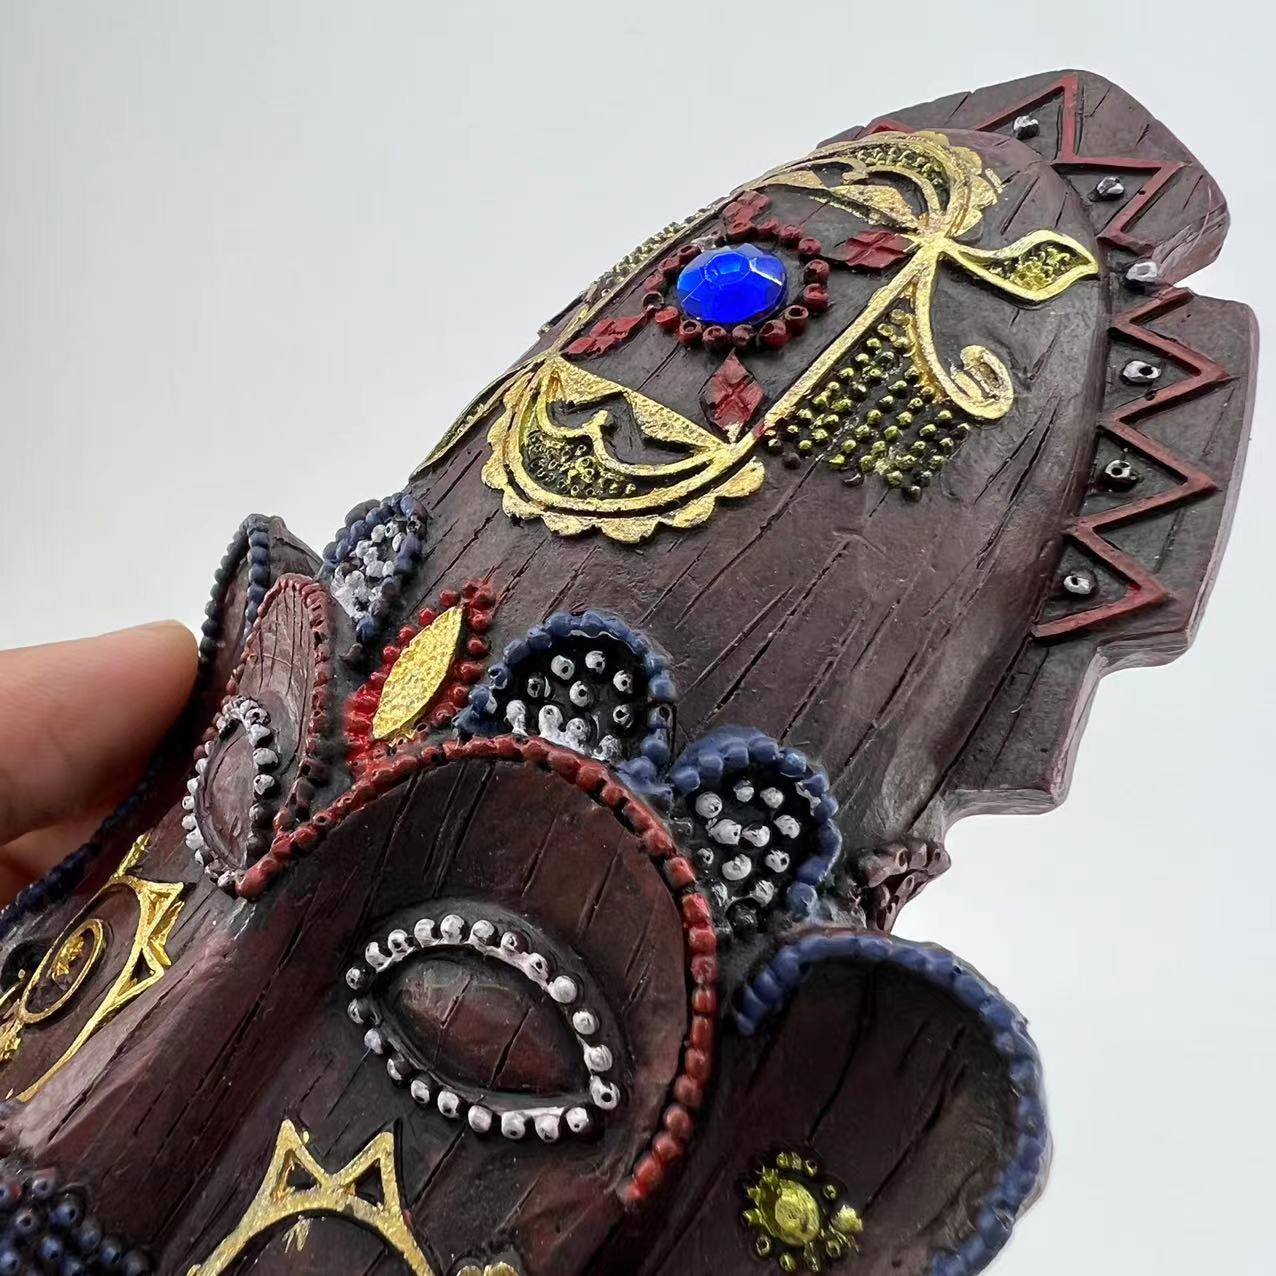 アフリカスタイルの装飾南アフリカケニアクリエイティブマスクペンダント手描き樹脂手工芸装飾装飾品